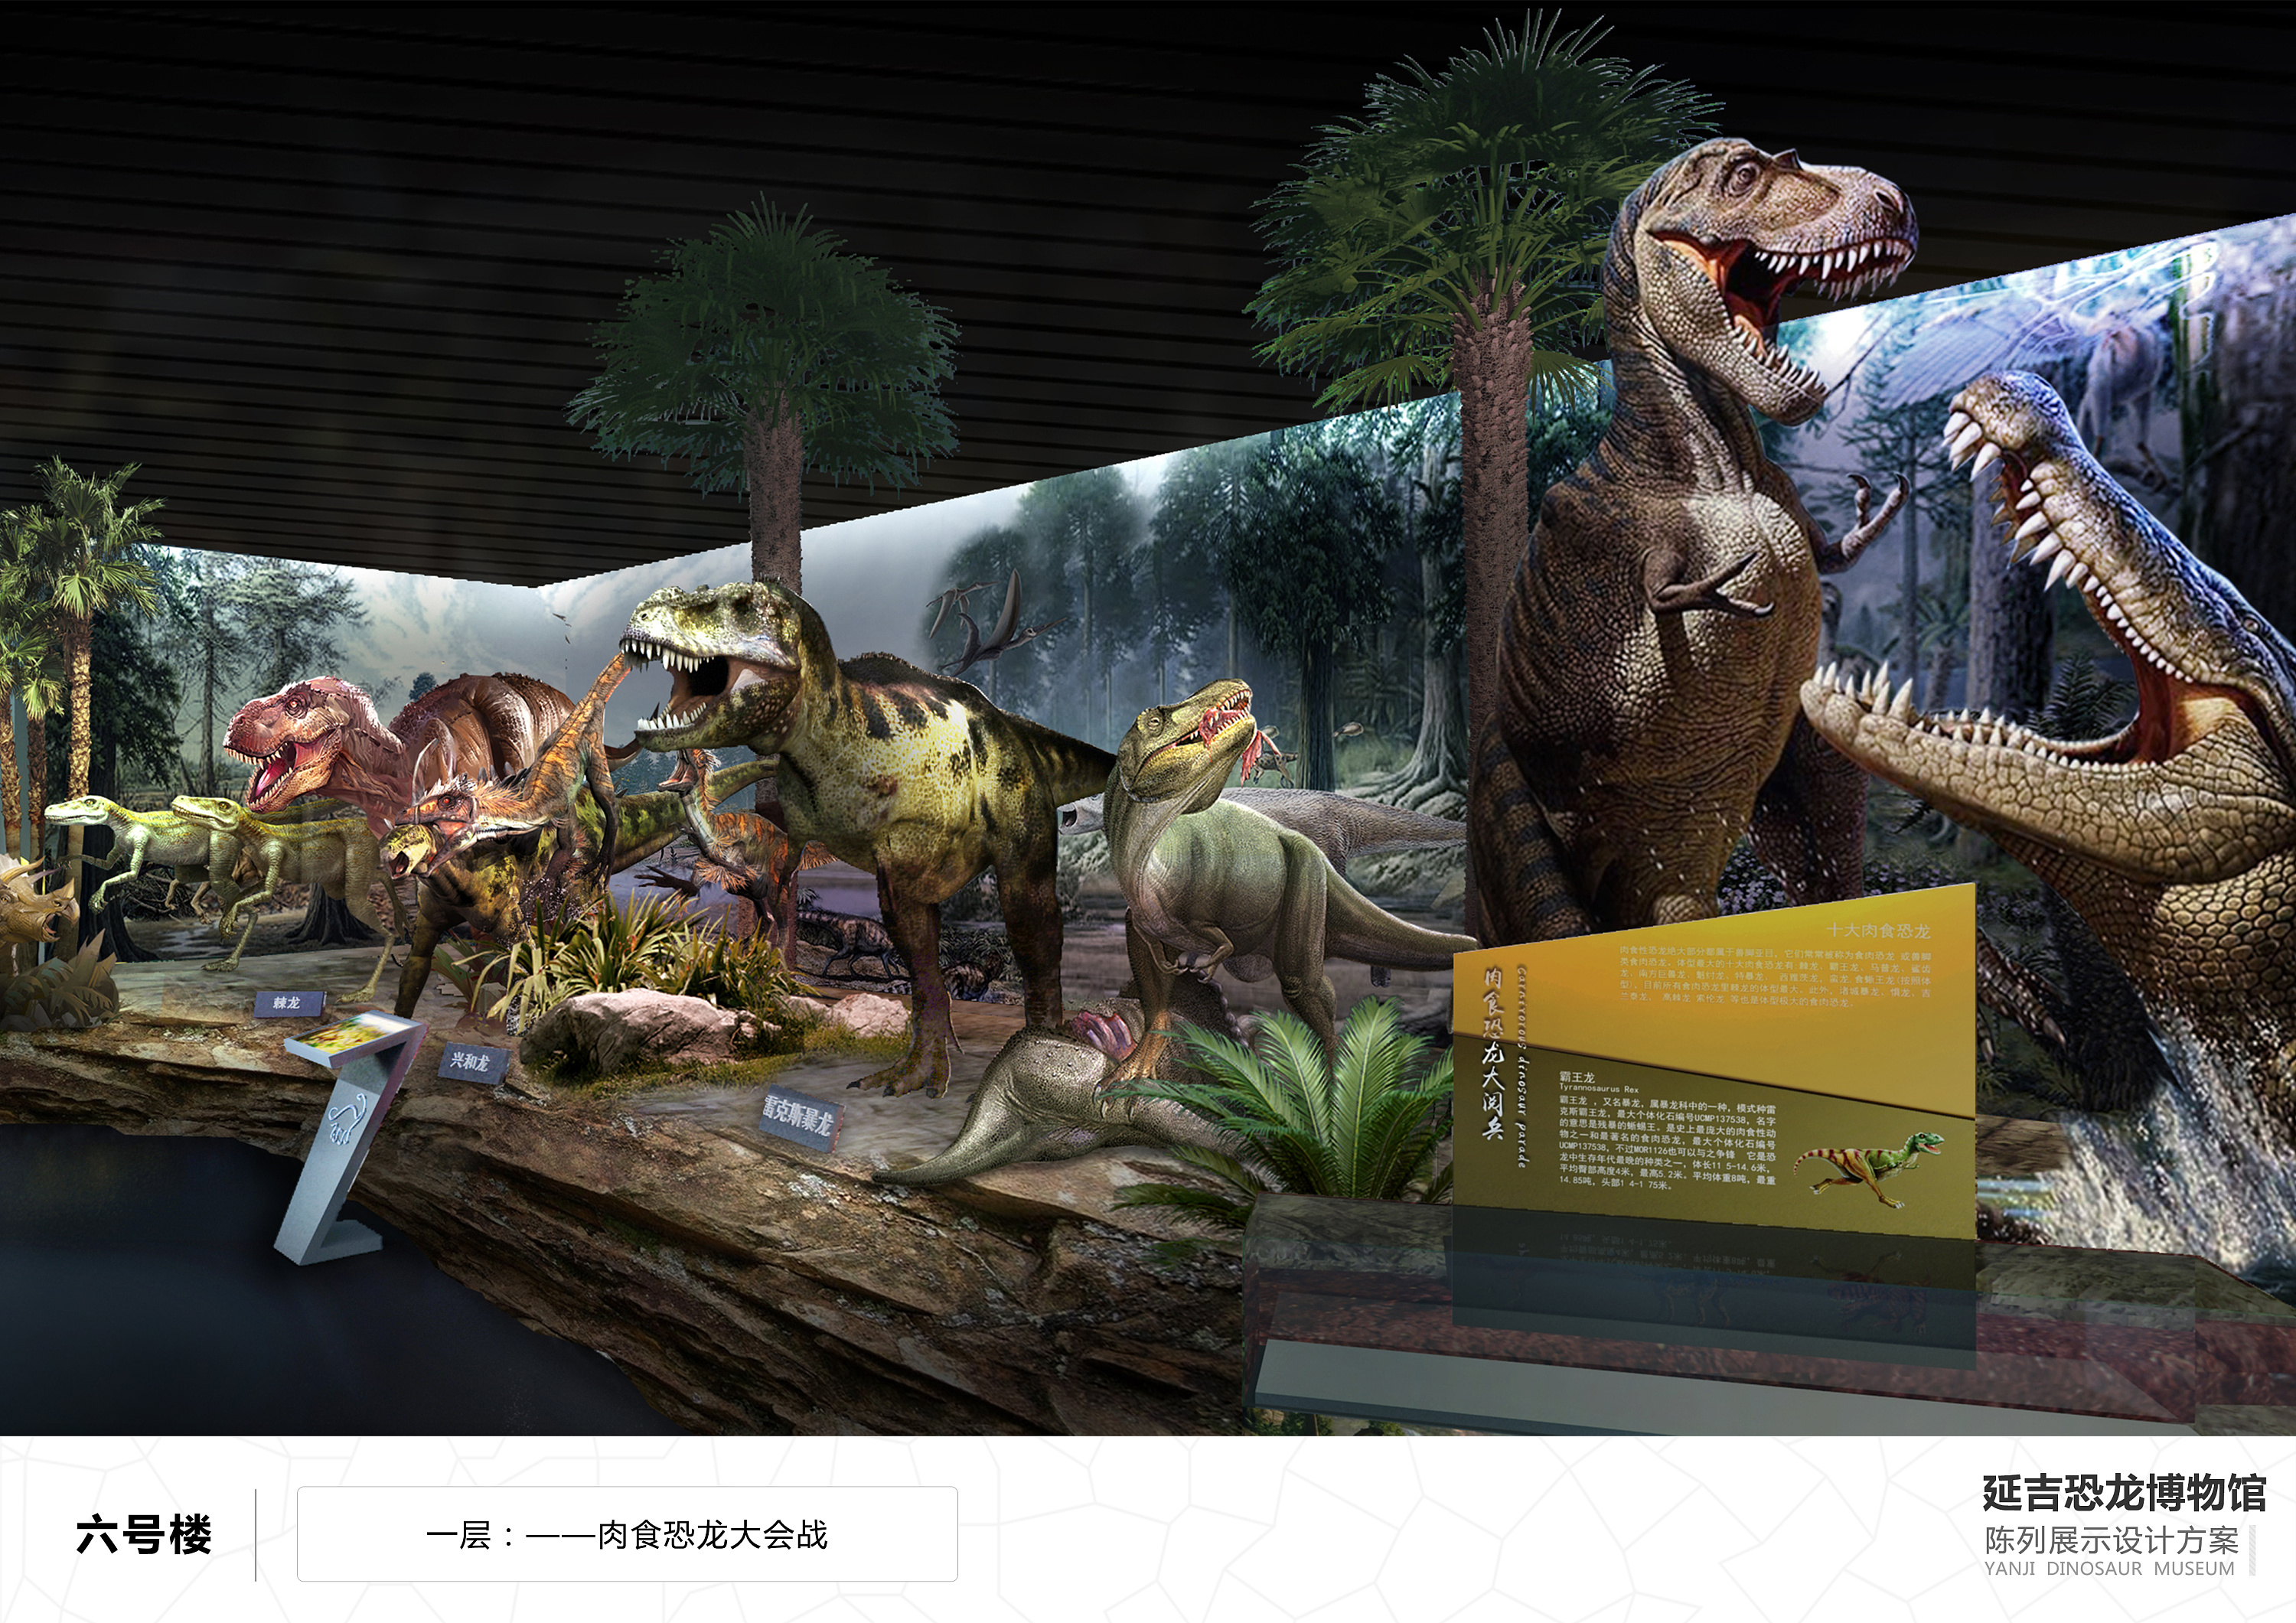 延吉恐龙博物馆画册